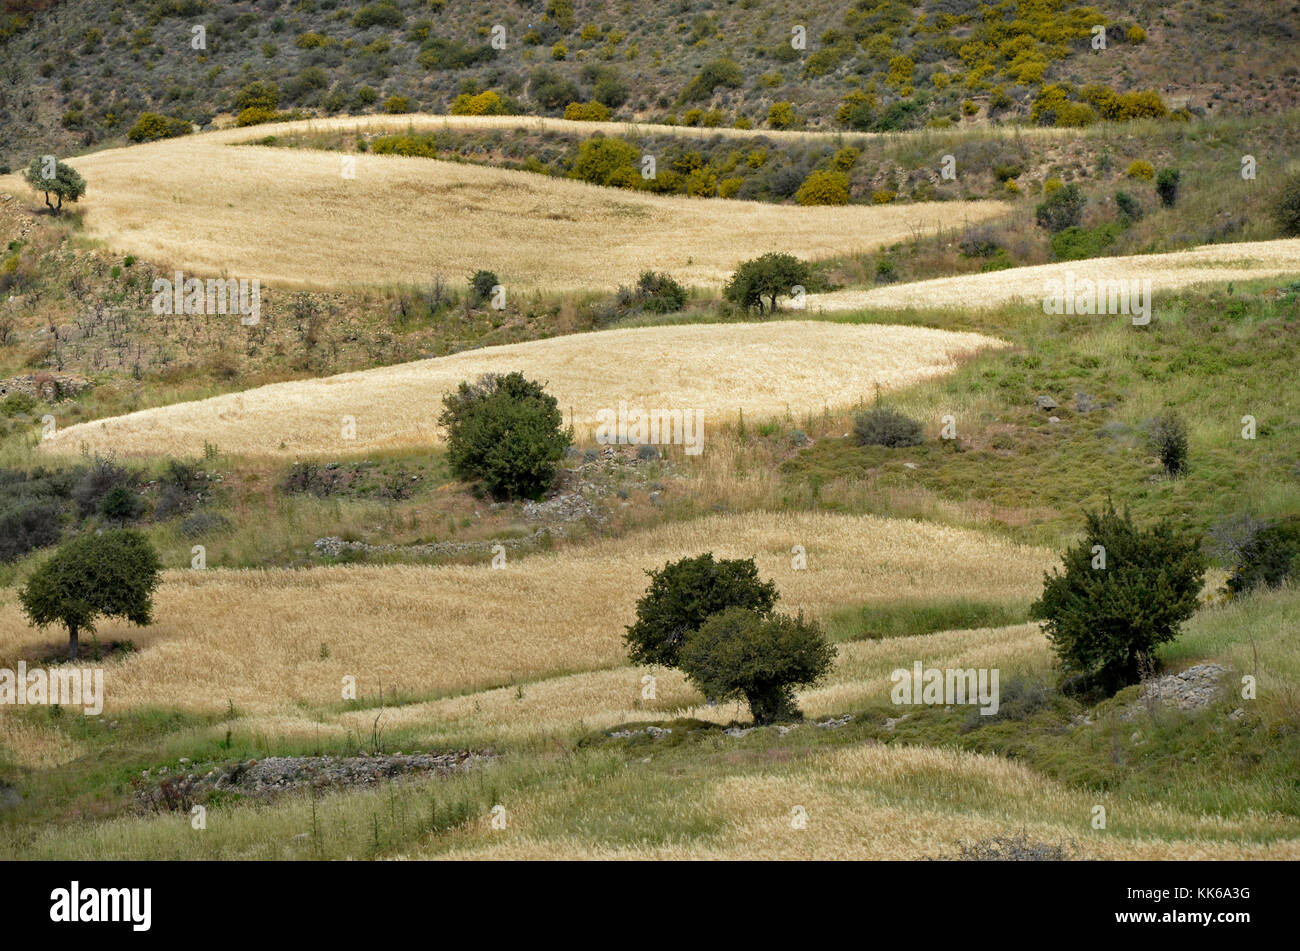 Il selvaggio e aspro paesaggio di akamas area di conservazione paphos cipro con alberi di olivo e piccoli campi di grano rendendo difficoltosa l'agricoltura, Foto Stock